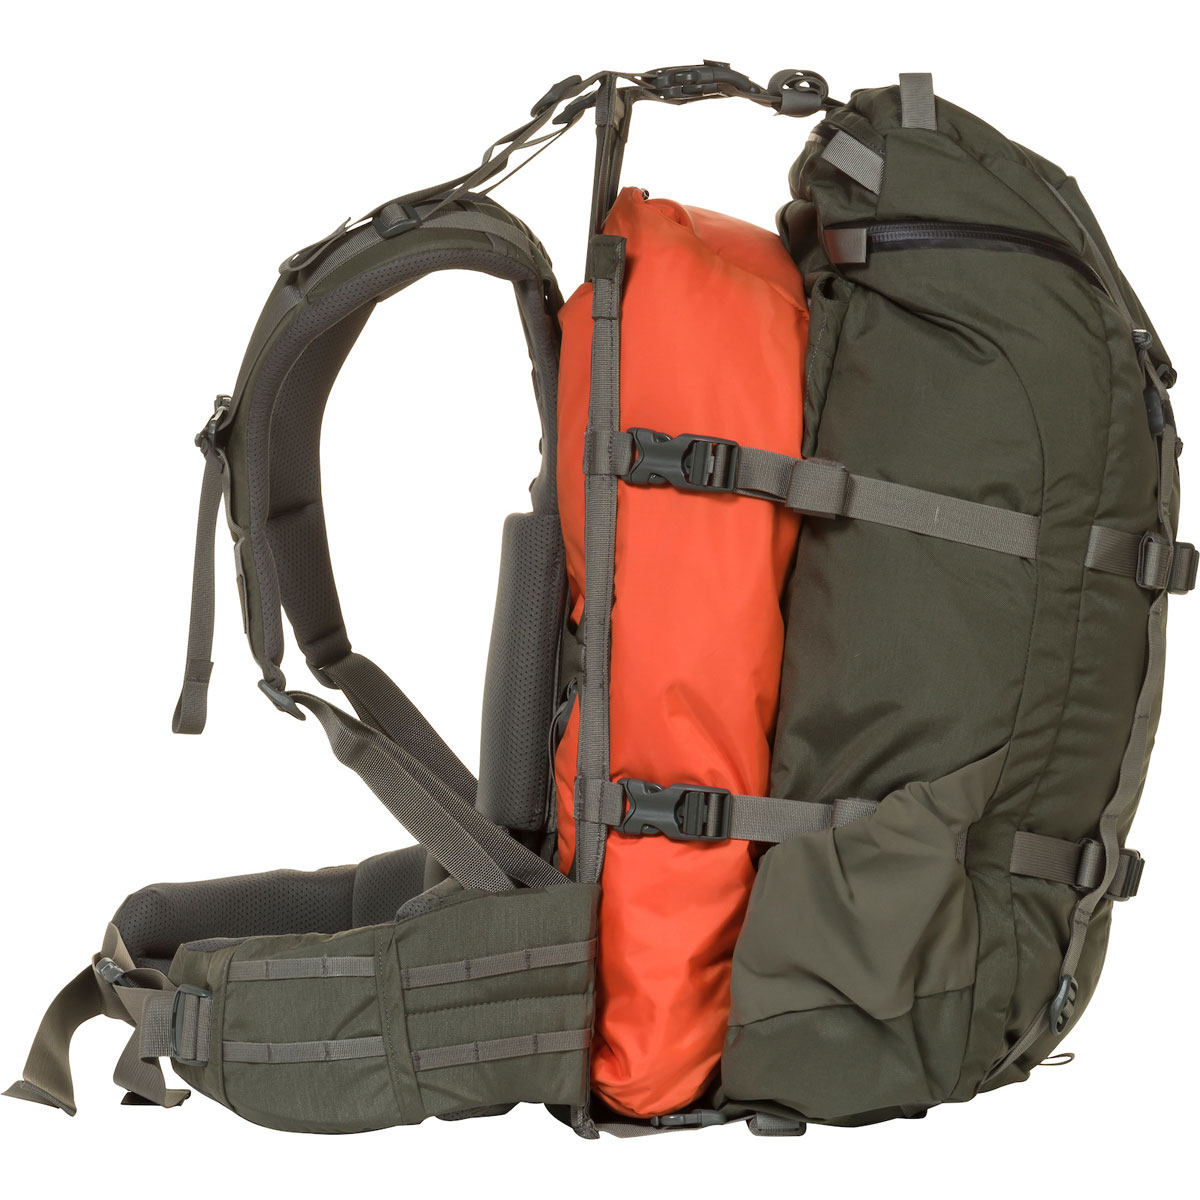 Pintler Pack | MYSTERY RANCH Backpacks